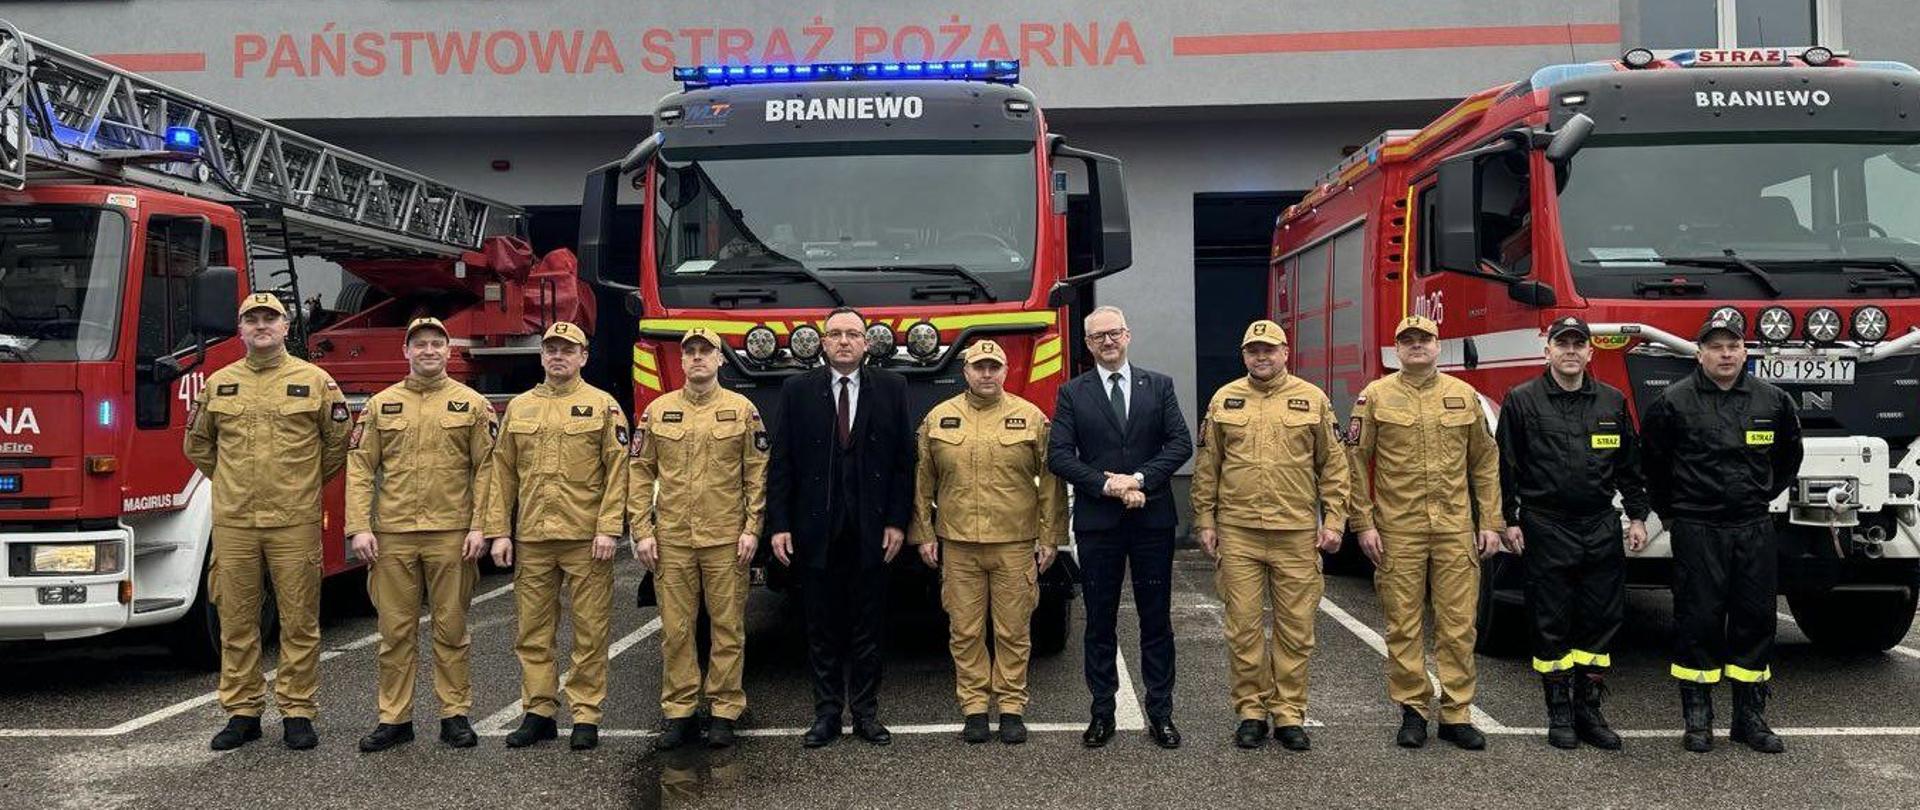 Na zdjęciu obok siebie stoją Wojewoda Warmińsko mazurski, burmistrz Braniewa ze strażakami. W tle samochody strażackie i remiza JRG Braniewo